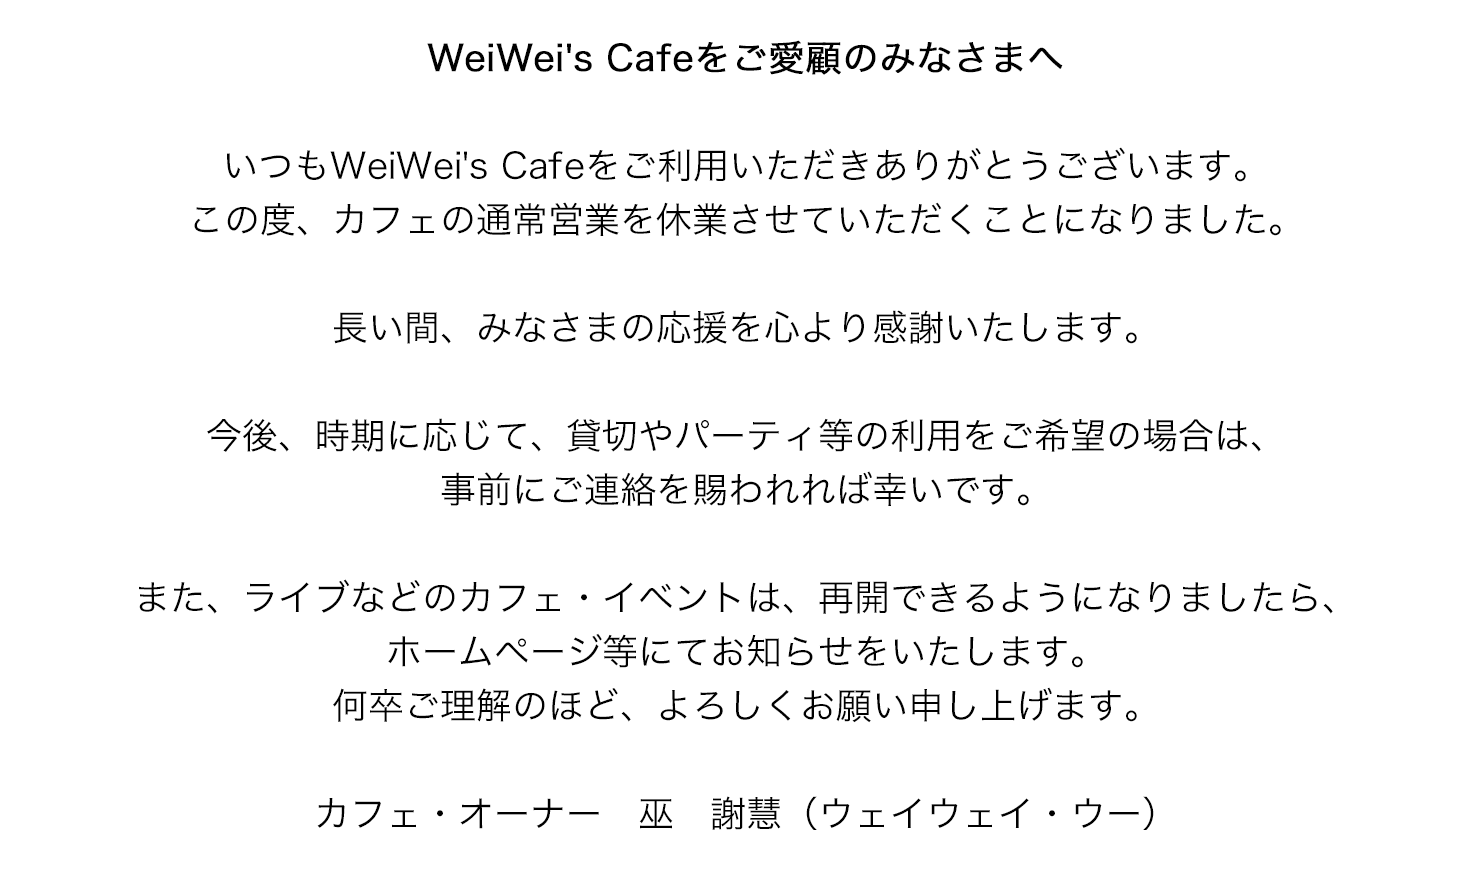 WeiWei's Cafe をご愛顧の皆さまへ　いつもWeiWei' Cafeをご利用頂き、ありがとうございます。この度、12月15日を持ちまして、カフェの通常営業を終了させて頂くことになりました。